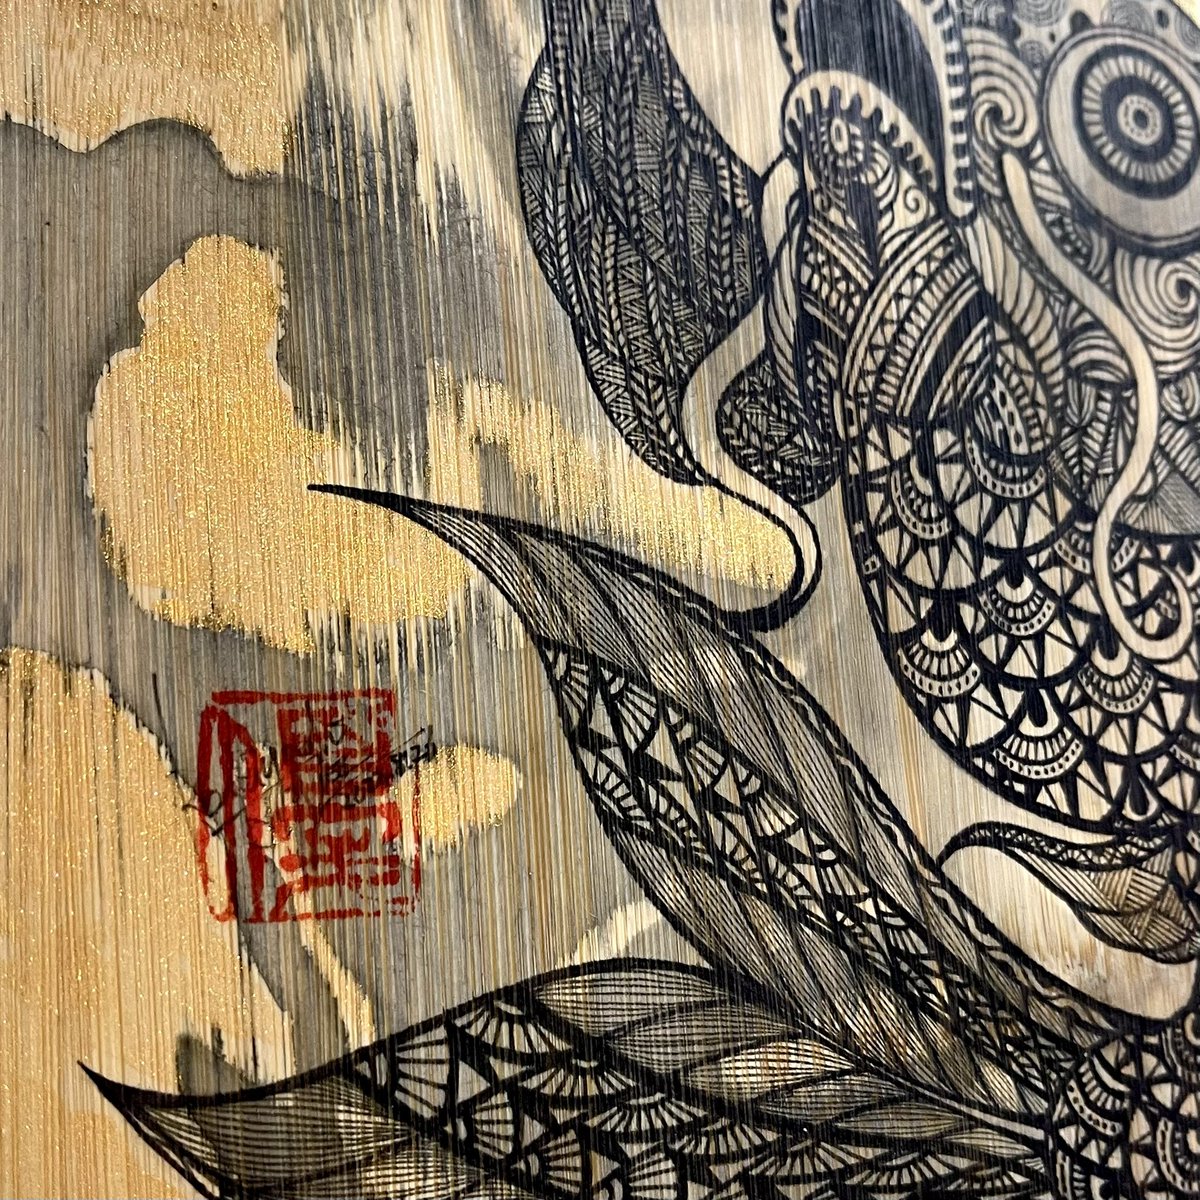 「タイトル:飛鯉サイズ:直径25cm材質:竹使用画材:ミリペン、アクリル価格:¥2」|画家@優太のイラスト